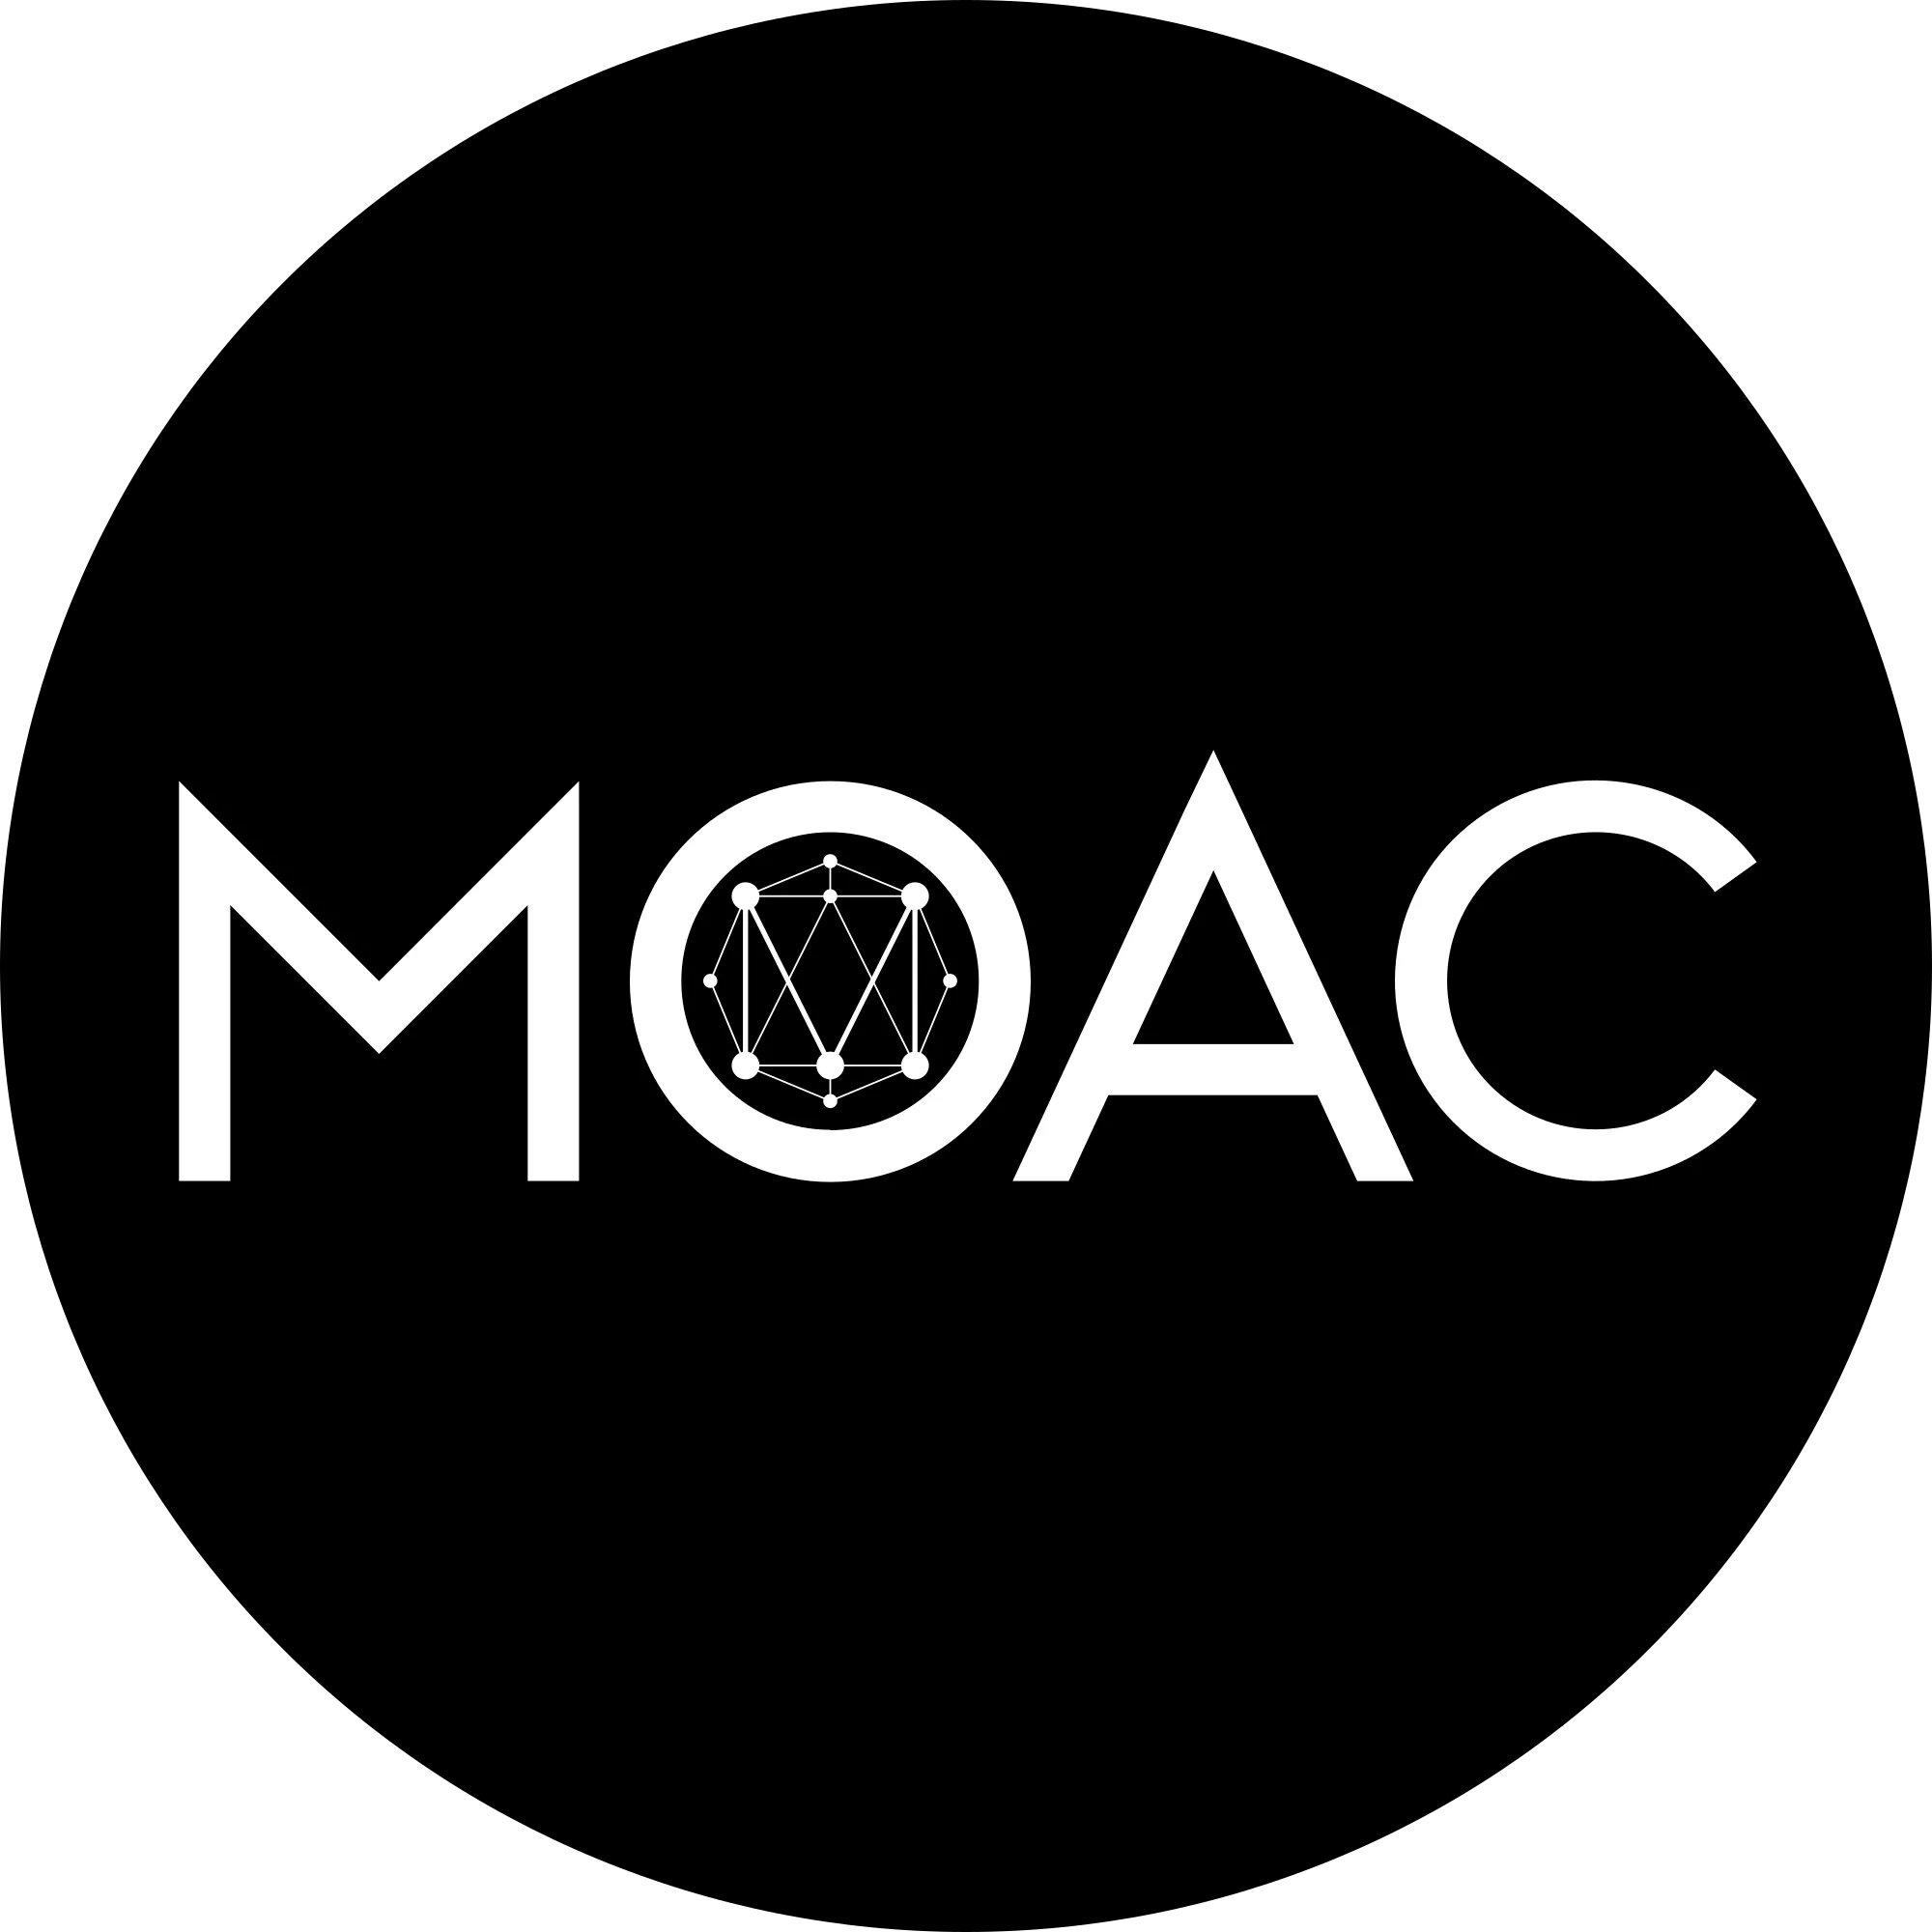 MOAC (MOAC) logo